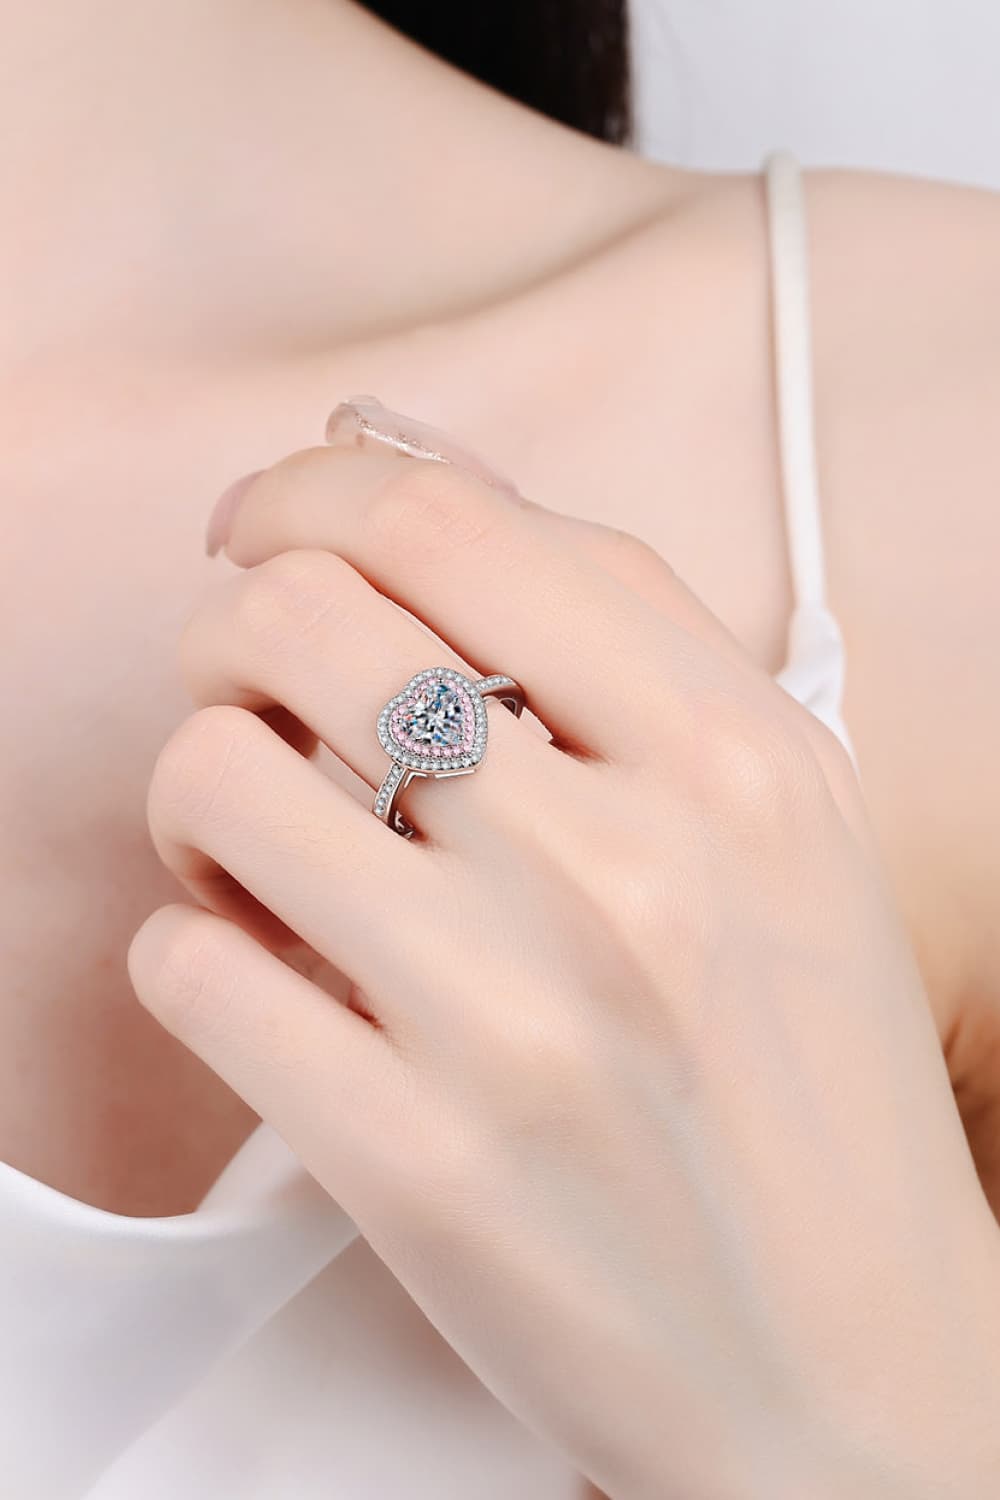 Moissanite Heart Sterling Silver Ring